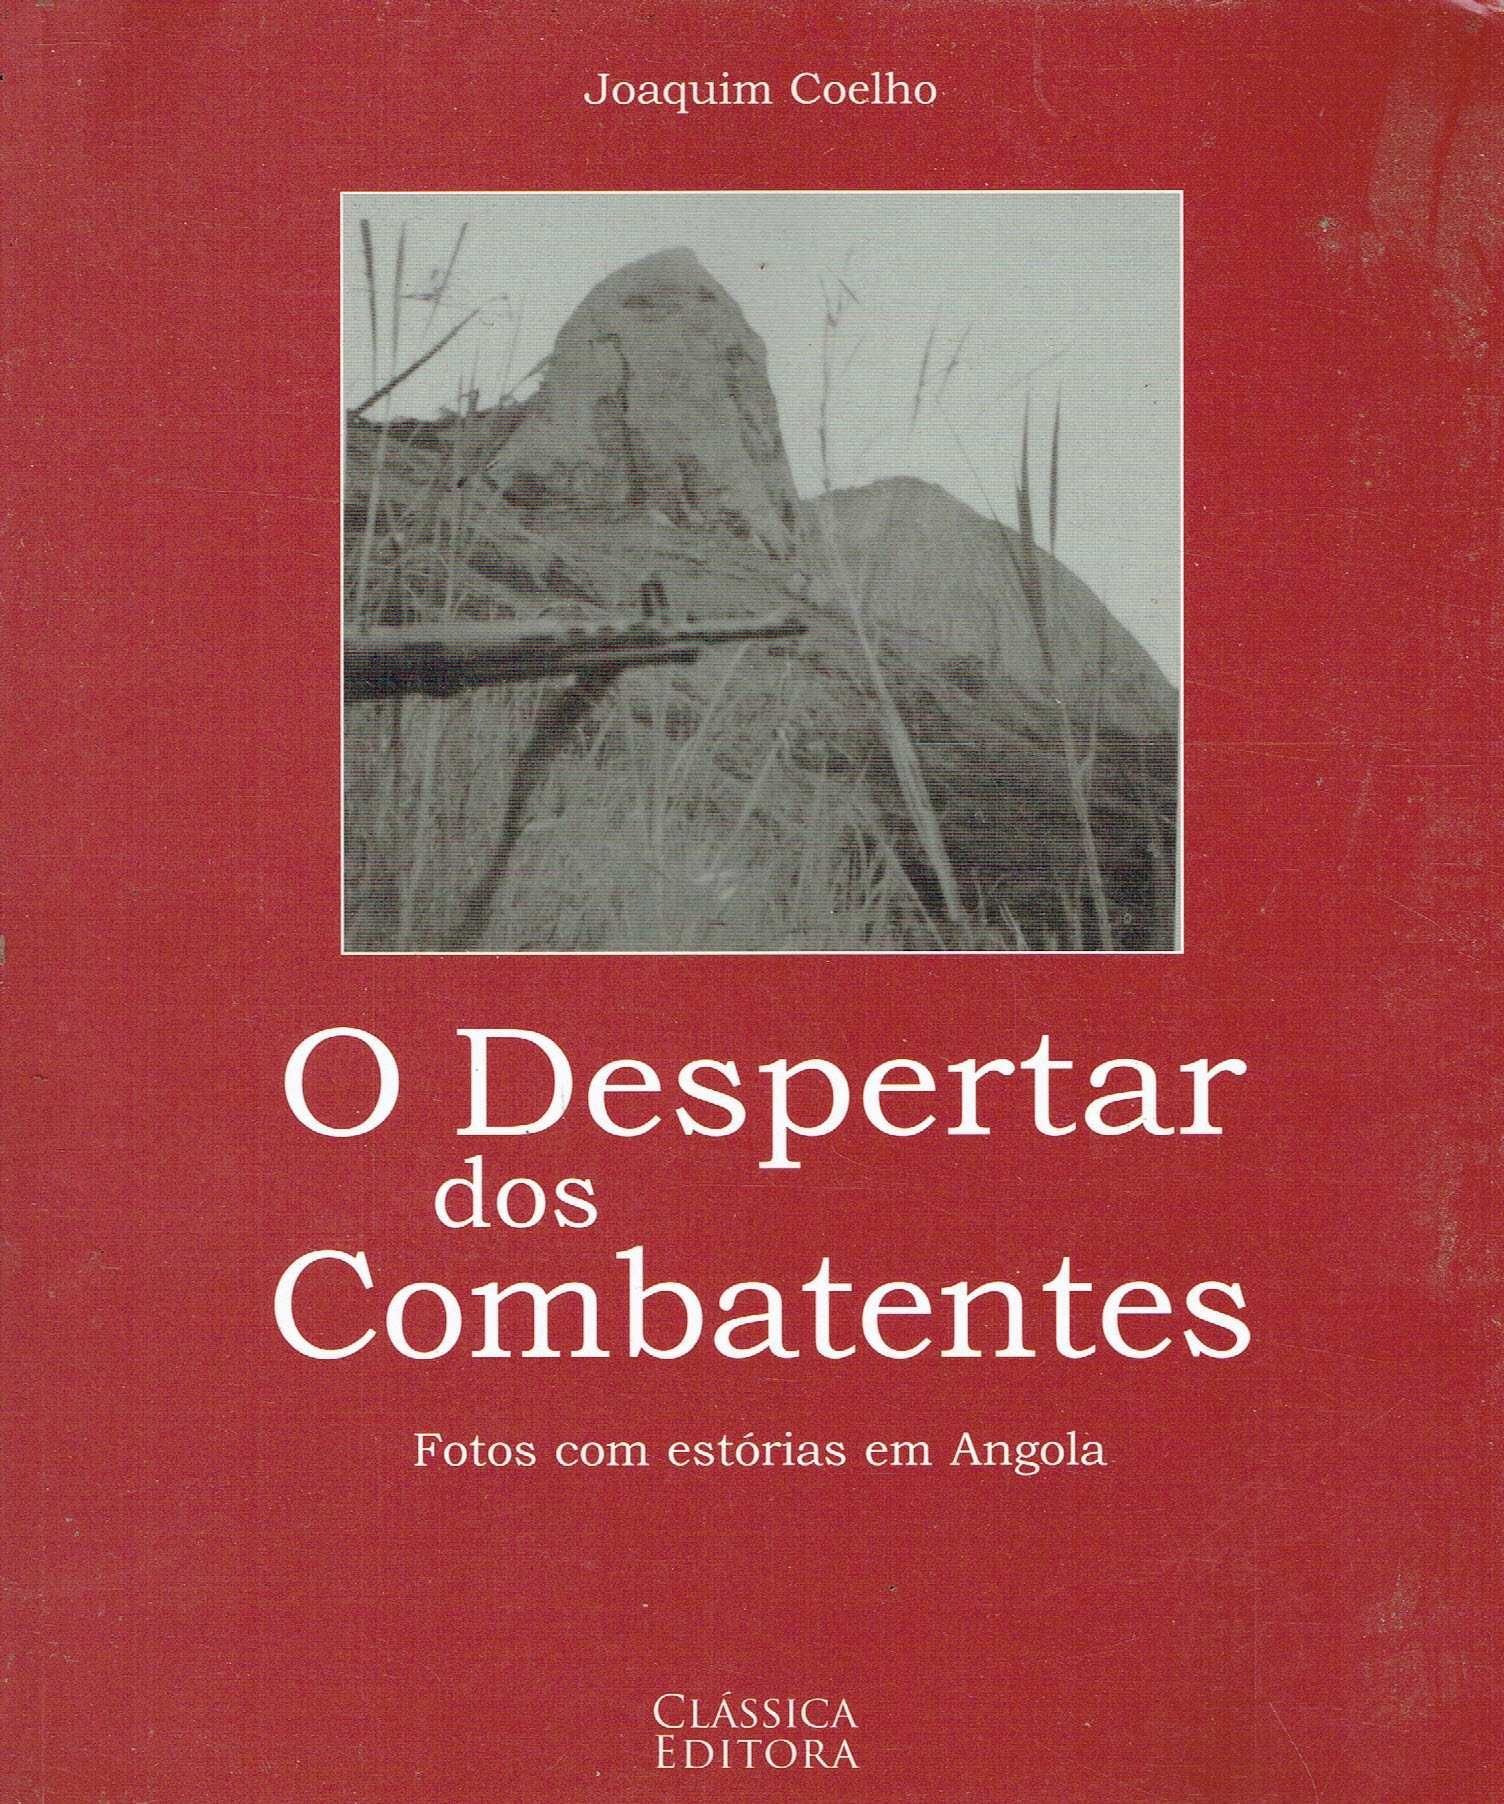 1544

O Despertar dos Combatentes
 estórias em Angola
Joaquim Coelho